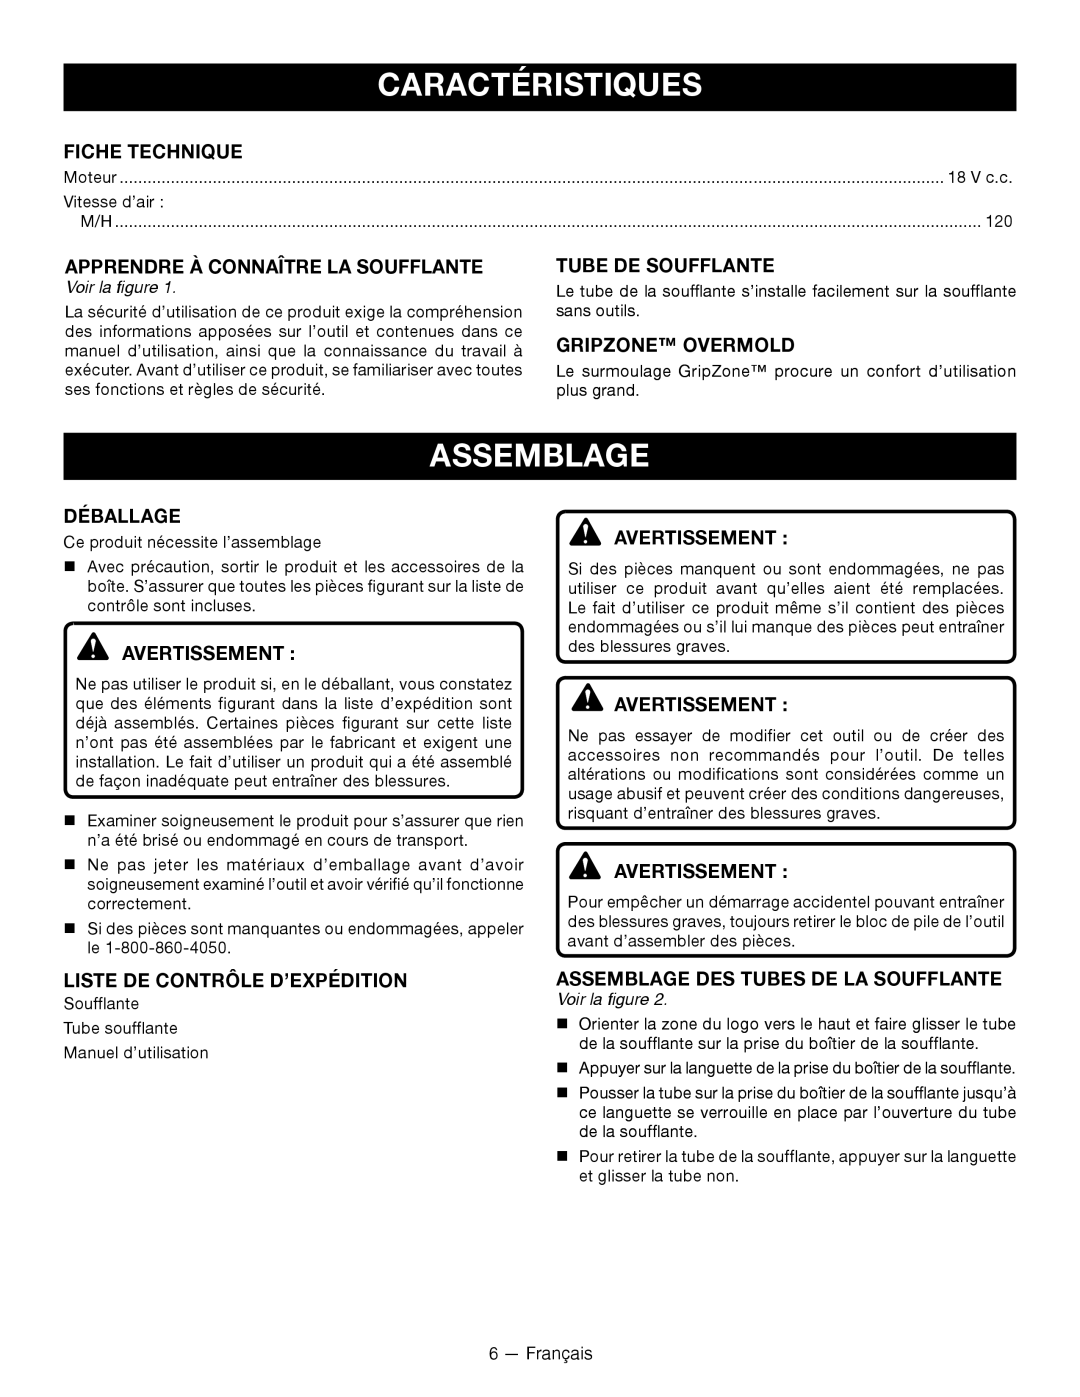 Ryobi P2105 manuel dutilisation Caractéristiques, Assemblage 